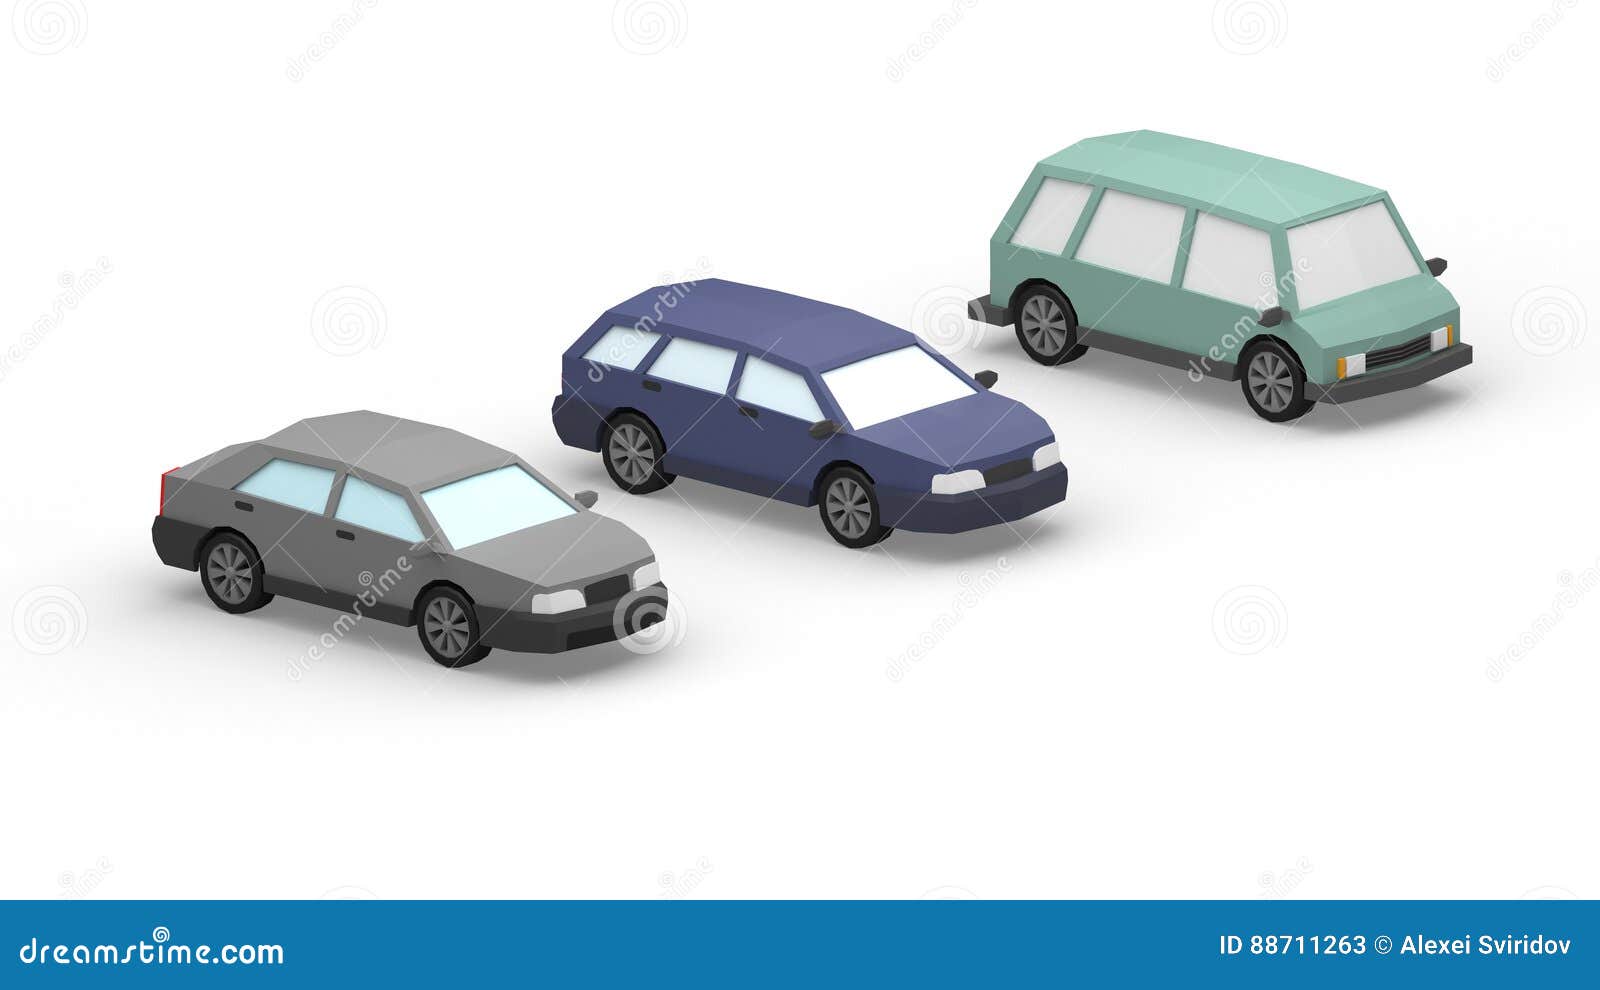 Vaga de estacionamento para carros pequenos 3D model - Baixar Arquitectura  no